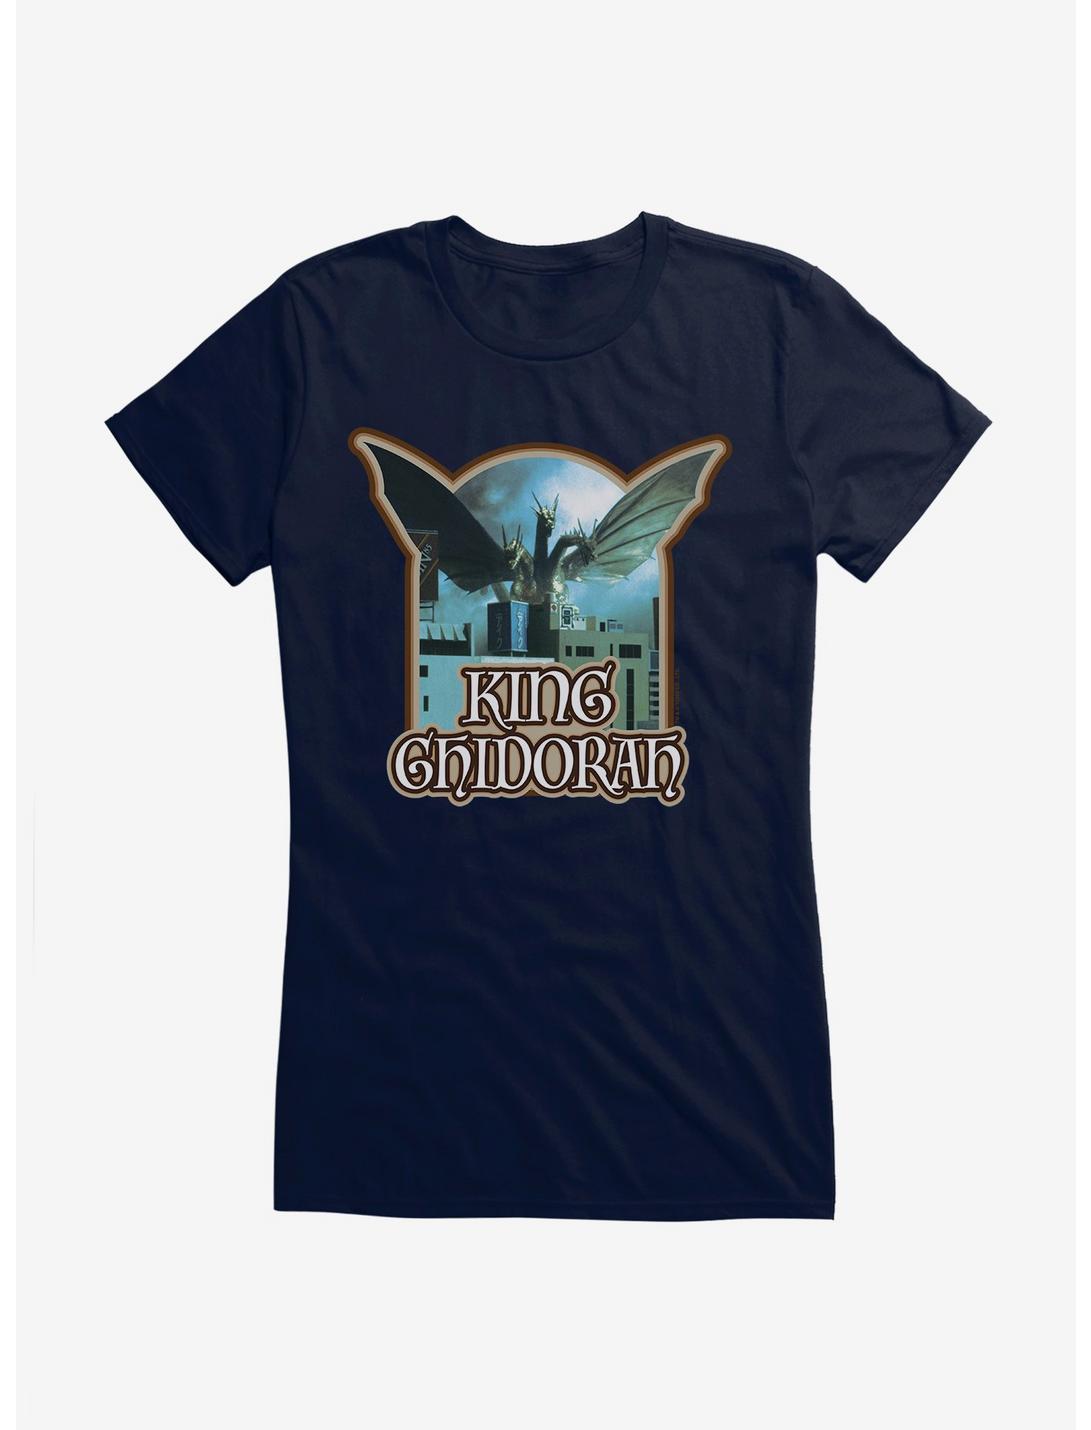 Godzilla King Chidorah Girls T-Shirt, , hi-res